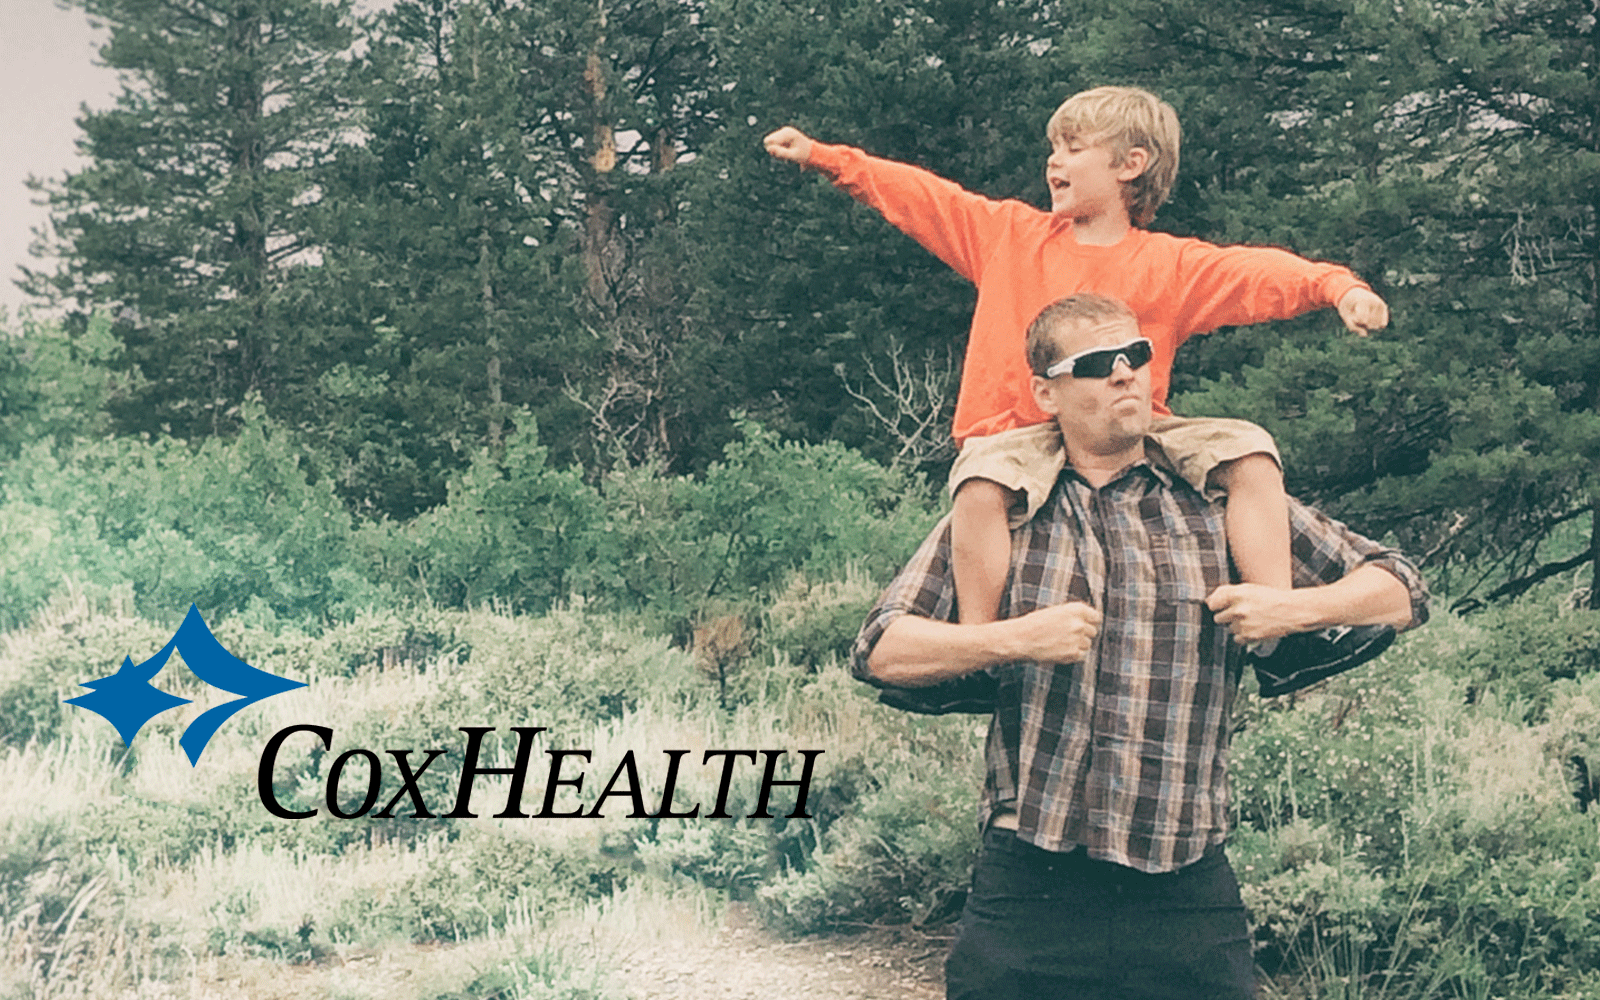 Cox Health